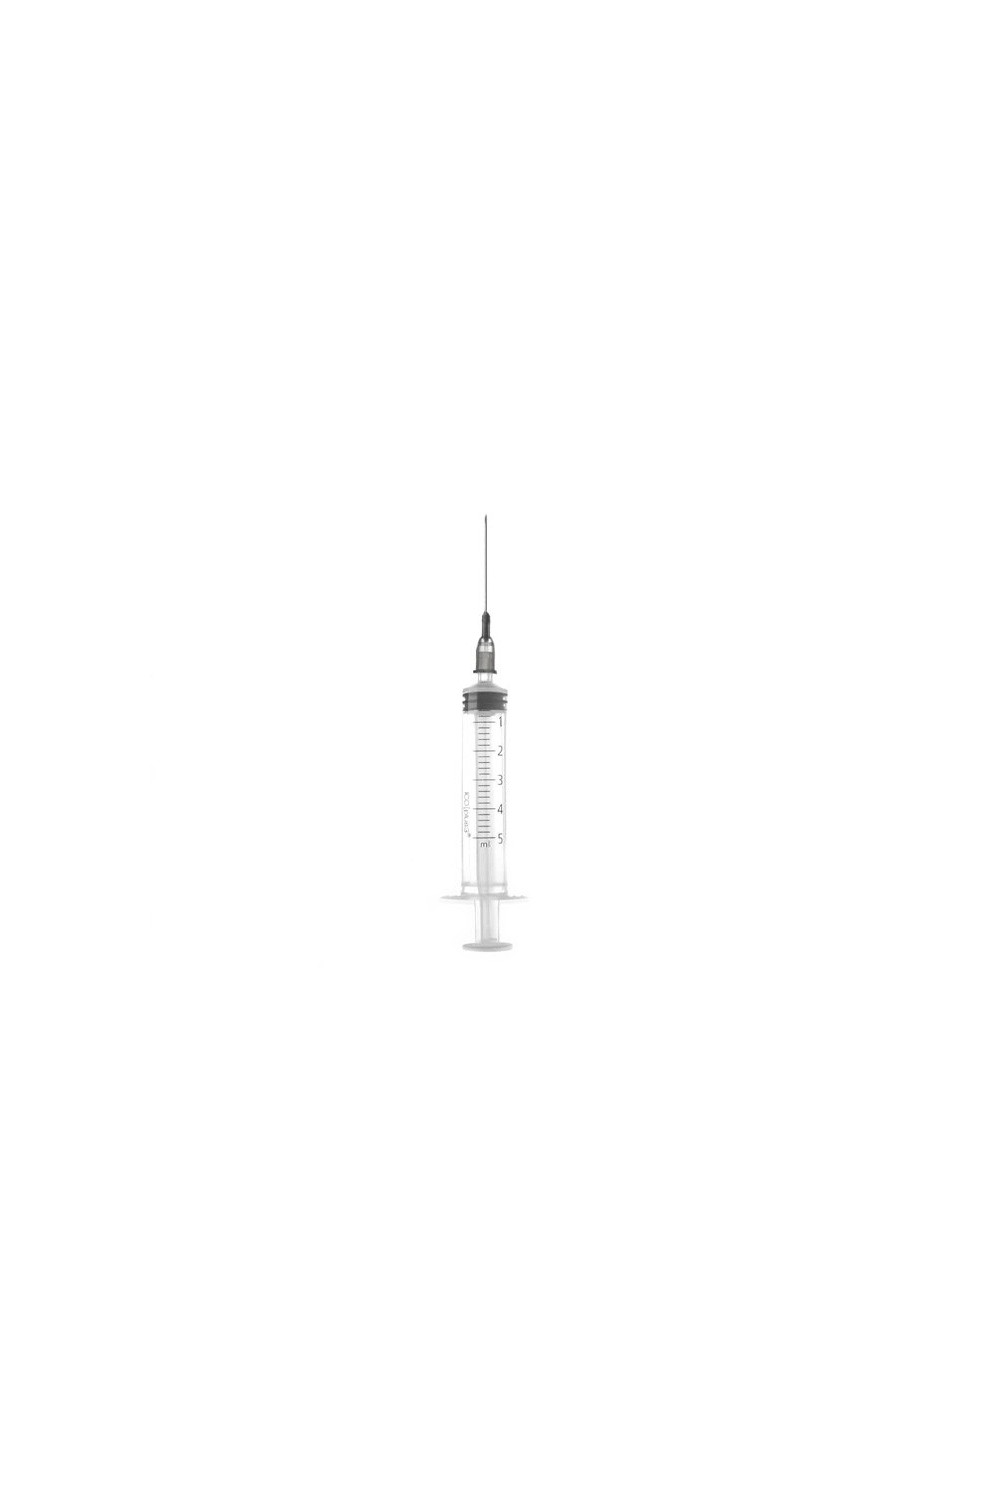 Ico Syringe With Needle 0,7x30 5ml G22 1 3/16